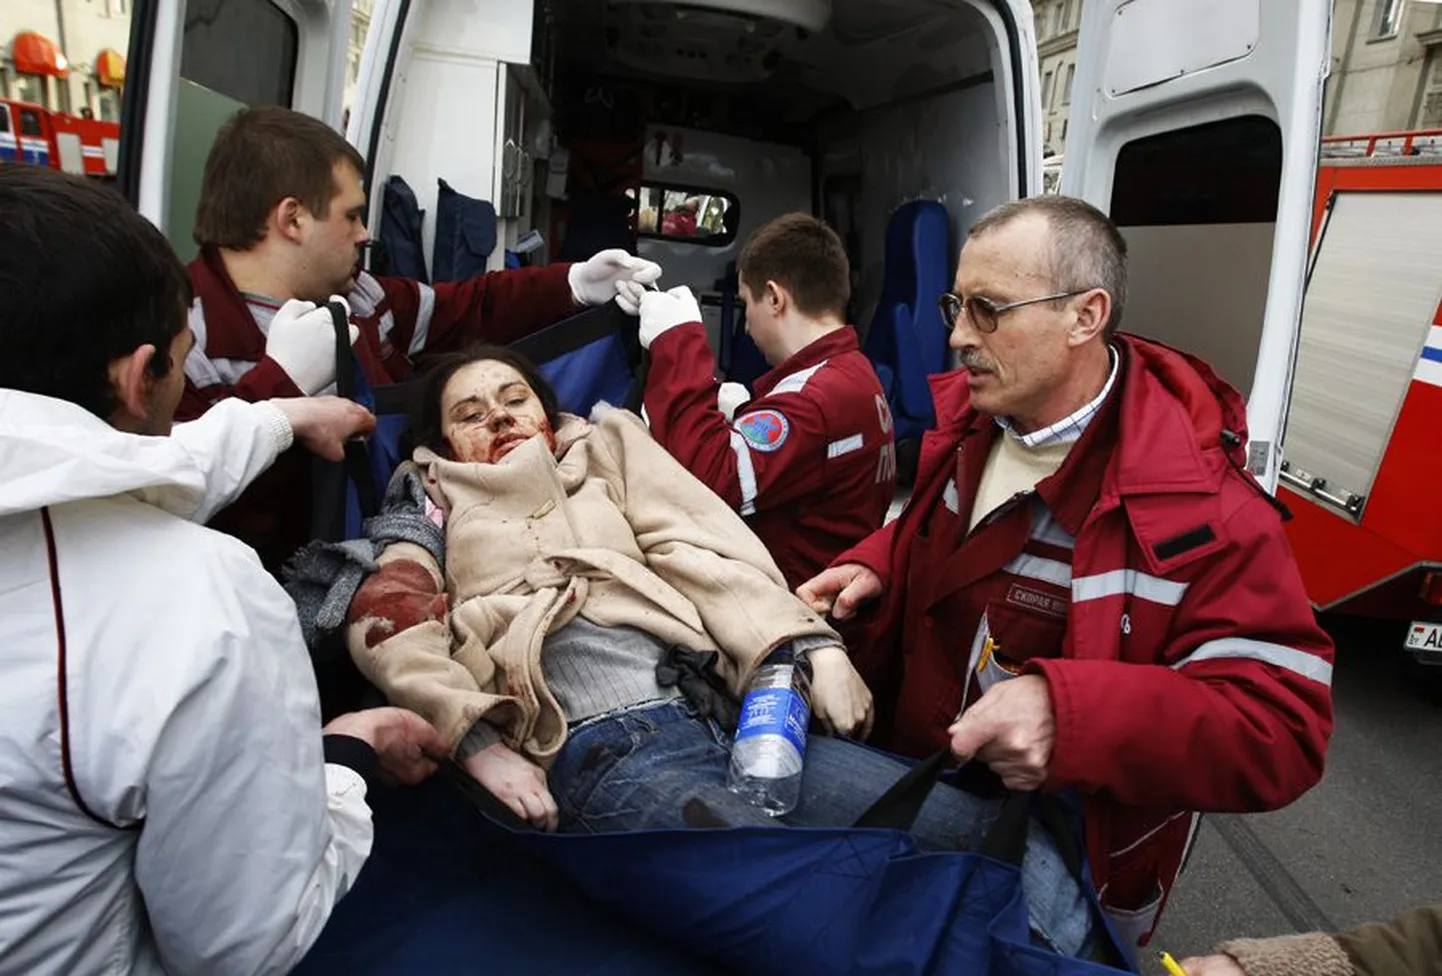 Arstid toimetavad Minski metrooplahvatuses viga saanud naist kiirabiautosse. Julgeolekuallikad peavad kõige tõenäolisemateks süüdlasteks terroriste.